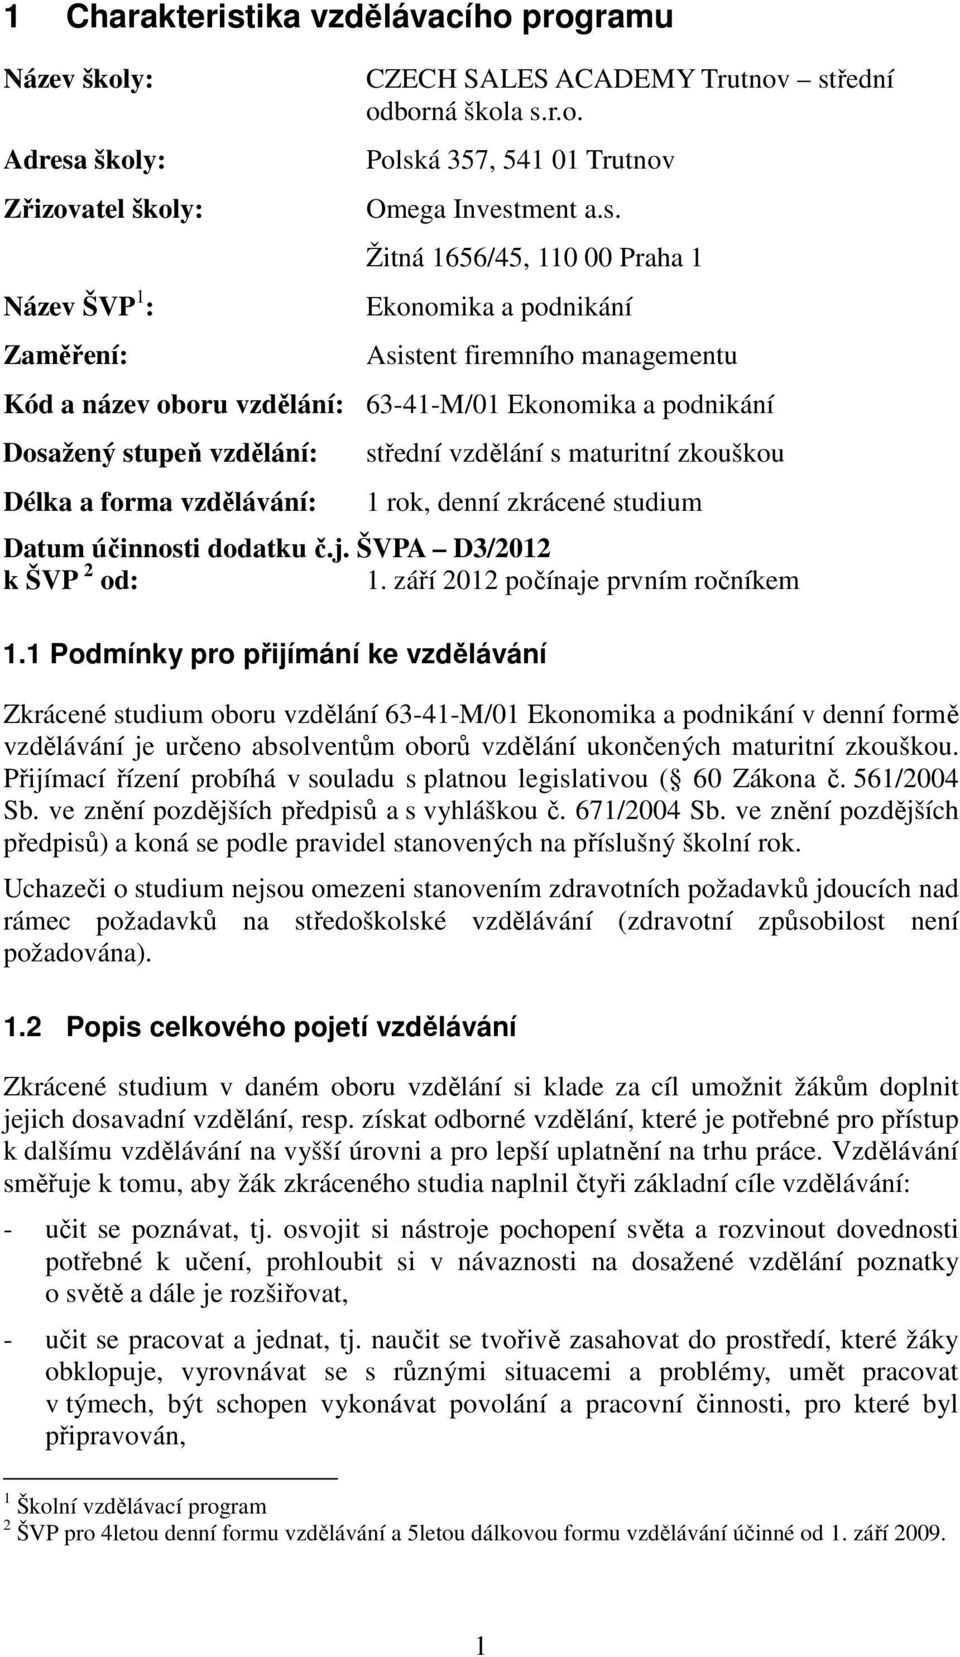 střední vzdělání s maturitní zkouškou 1 rok, denní zkrácené studium Datum účinnosti dodatku č.j. ŠVPA D3/2012 k ŠVP 2 od: 1. září 2012 počínaje prvním ročníkem 1.